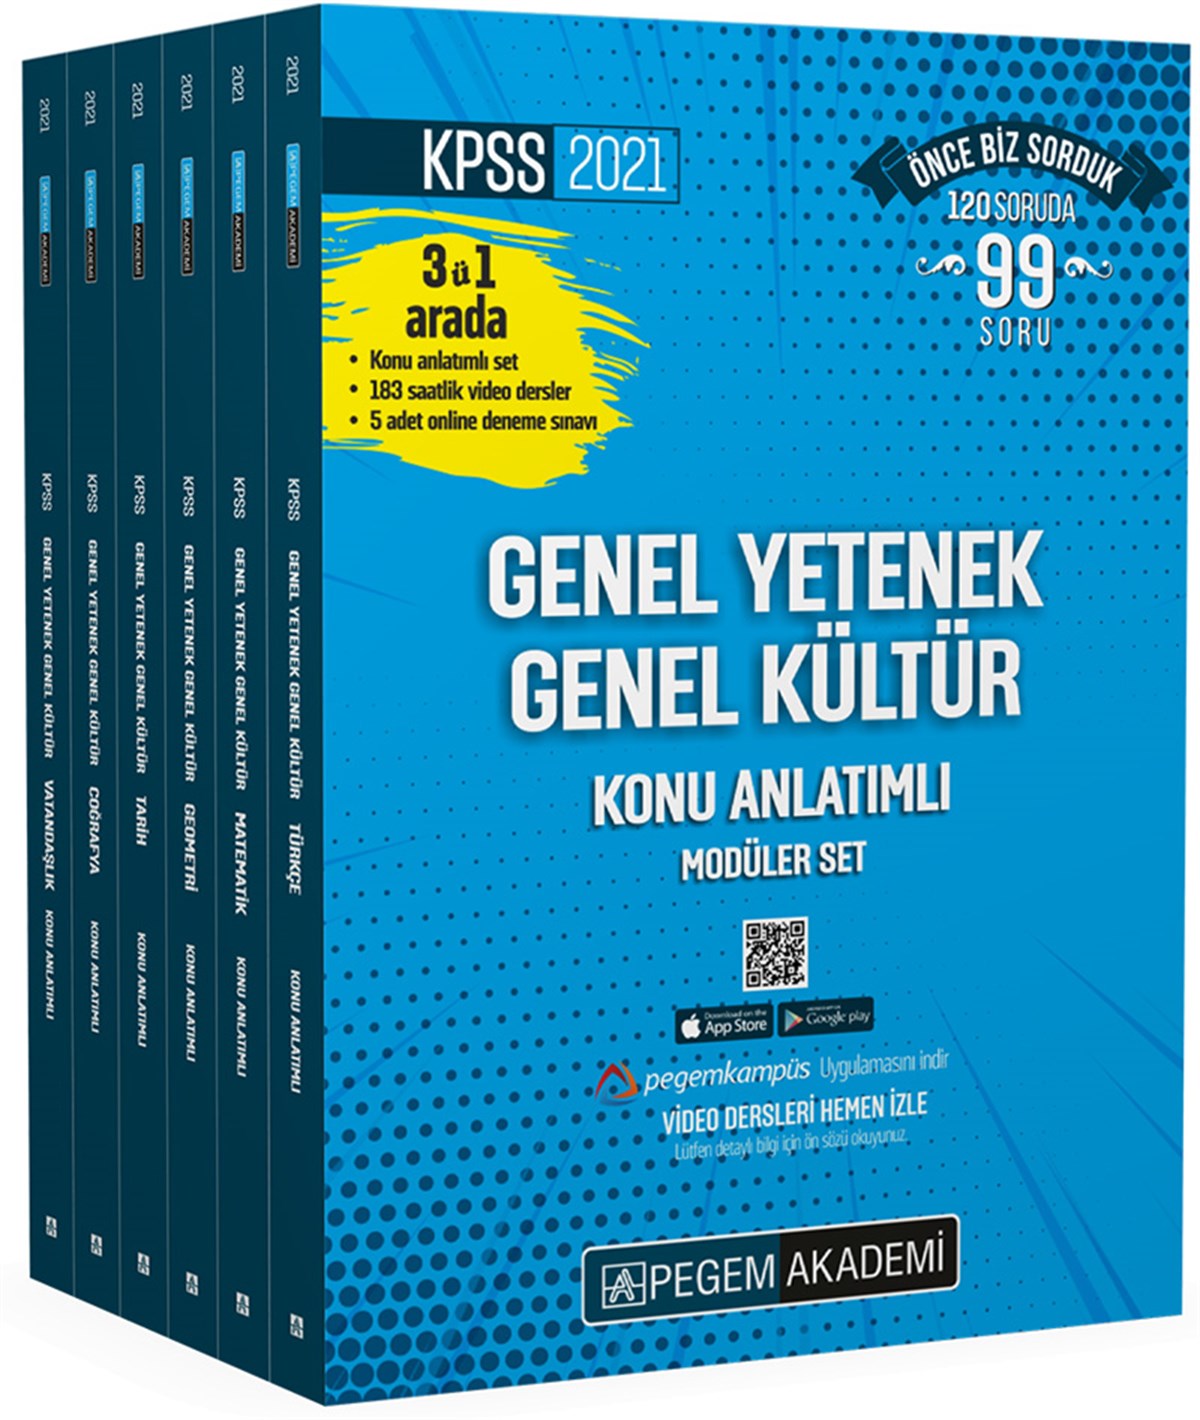 2021 KPSS Genel Yetenek Genel Kültür Konu Anlatımlı Modüler Set (6 Kitap)